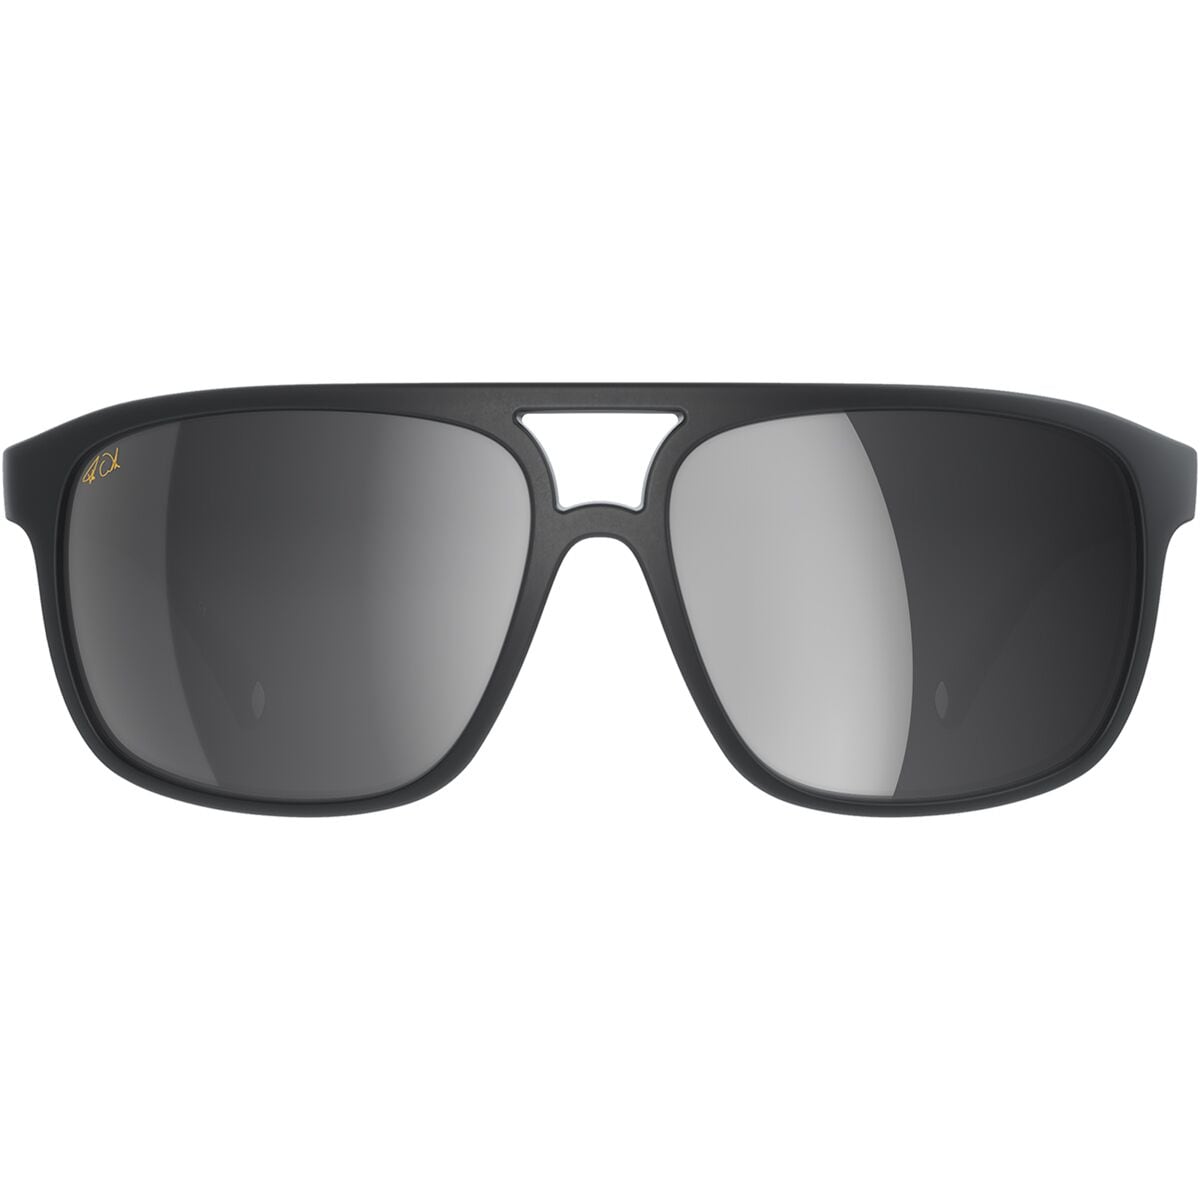  POC Will Fabio Edition Sunglasses - Accessories